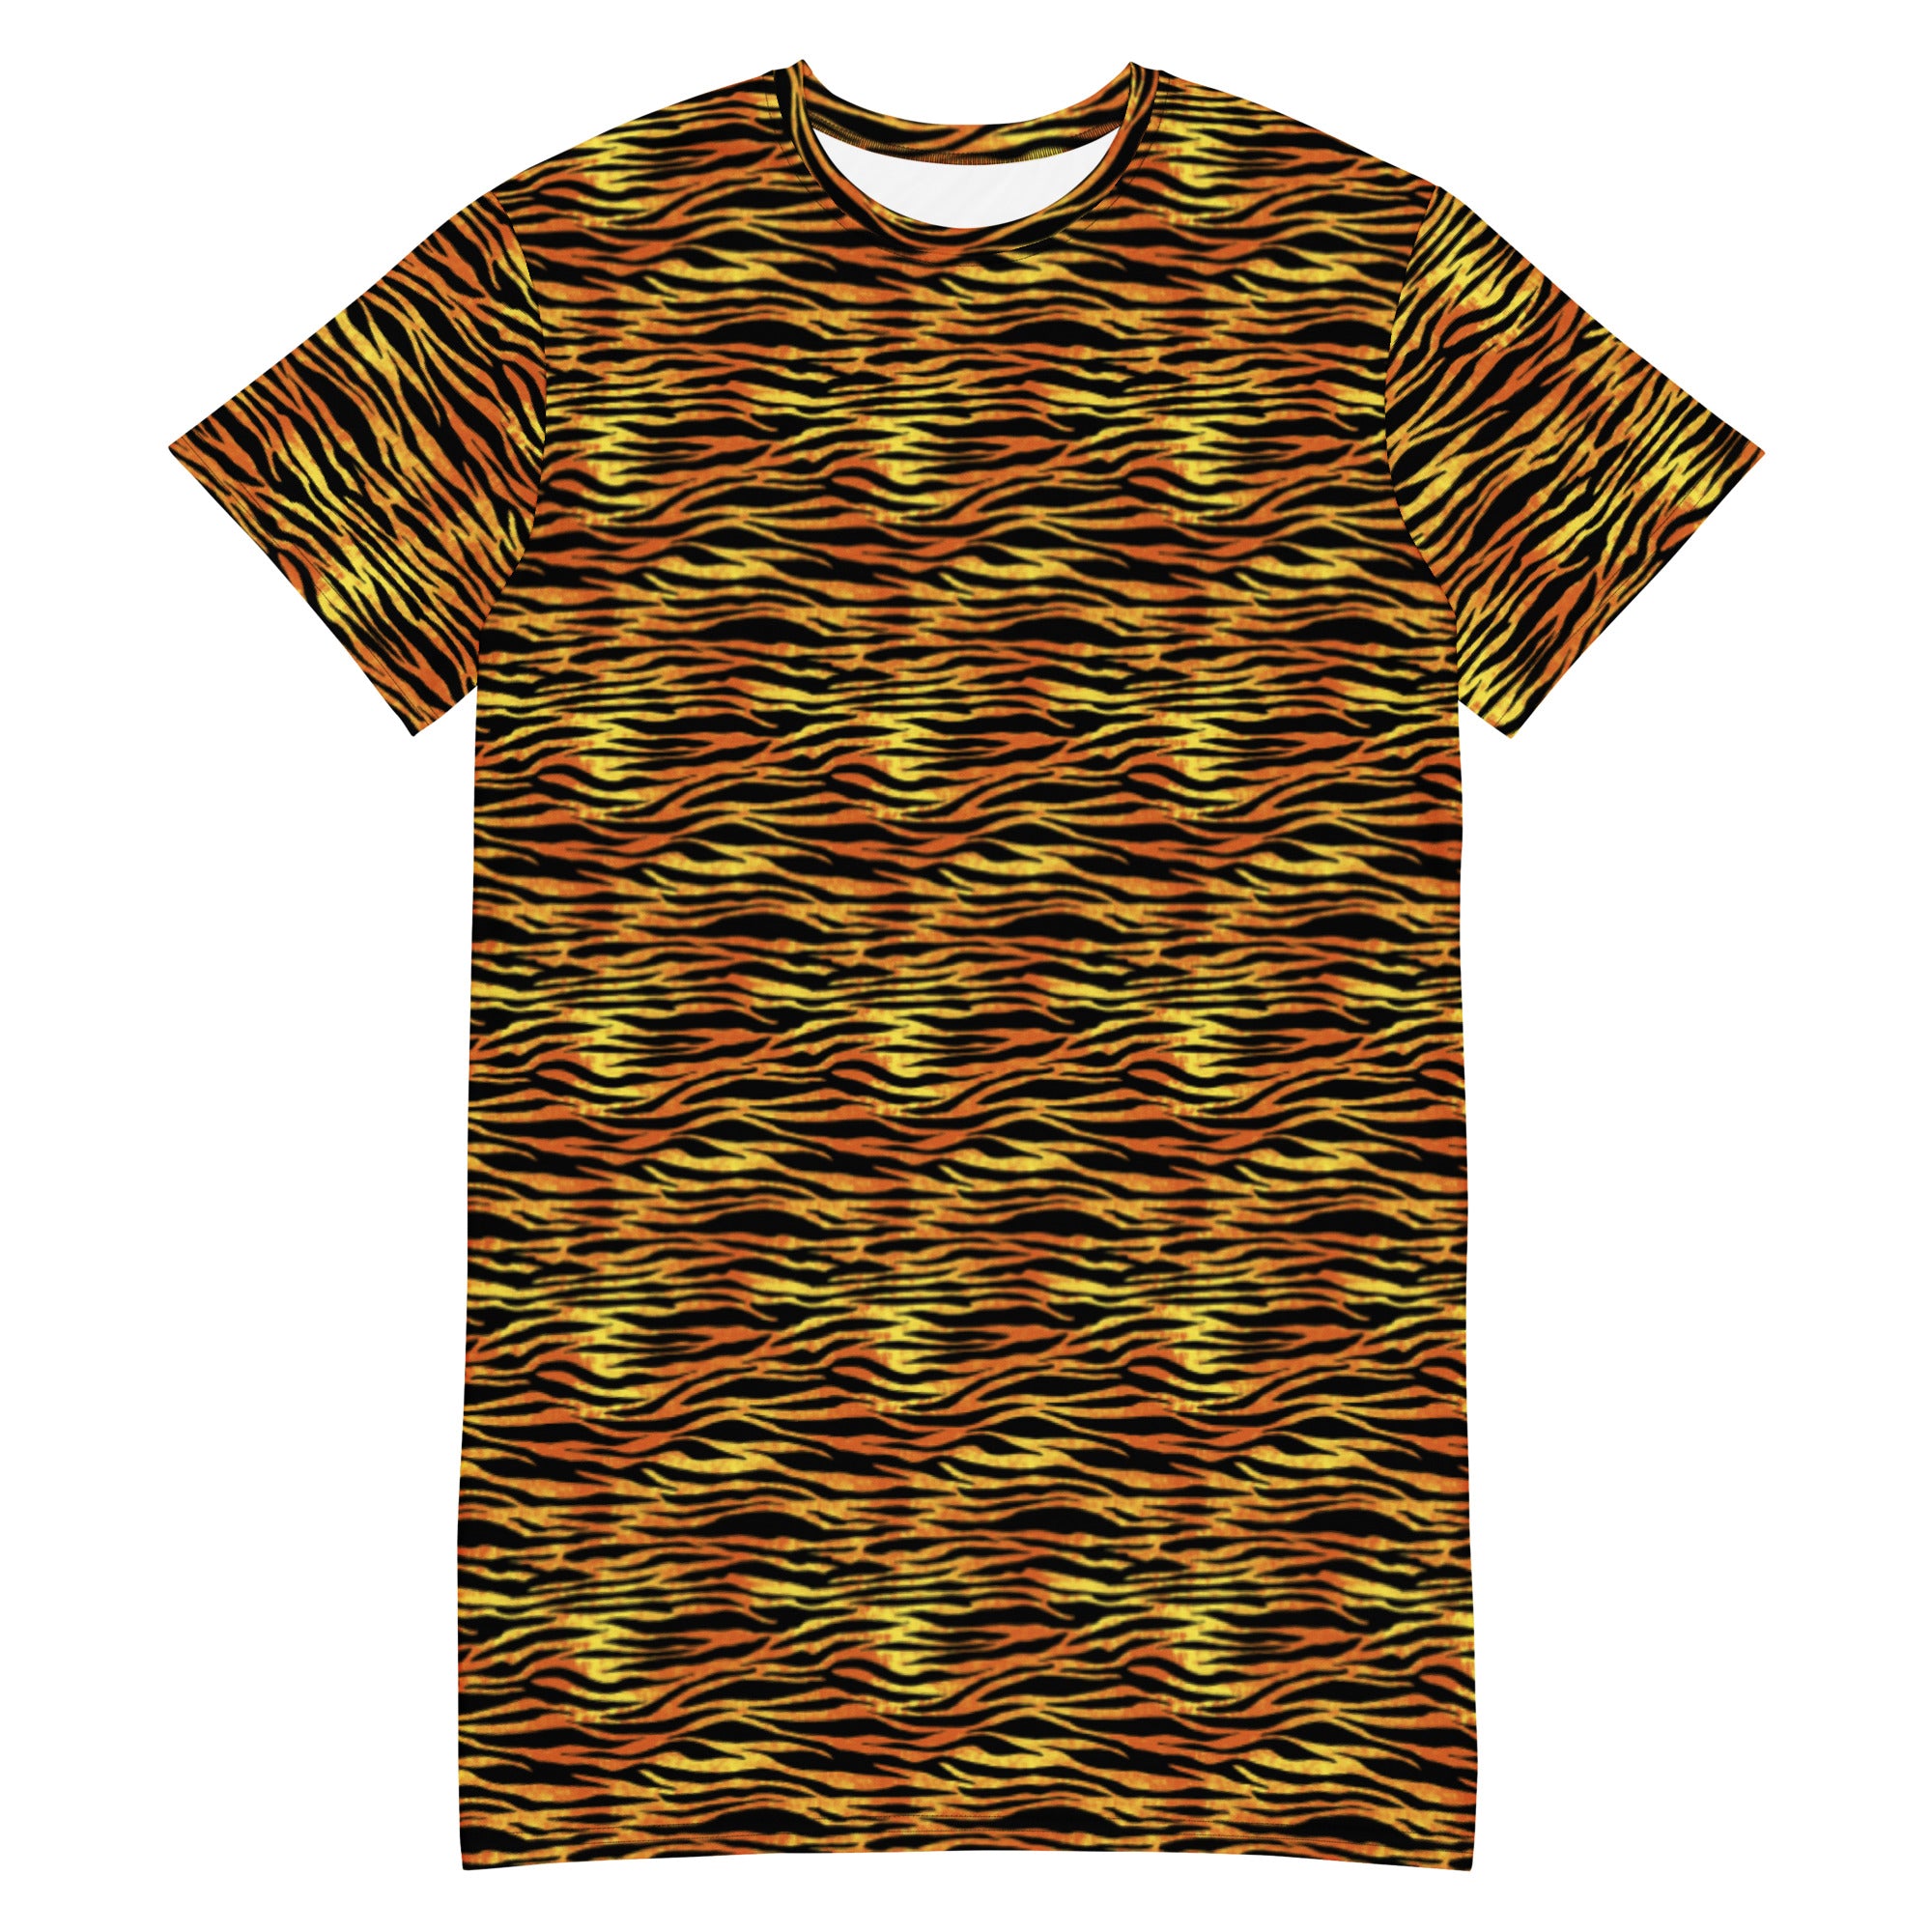 Wmns Tiger T-shirt Dress